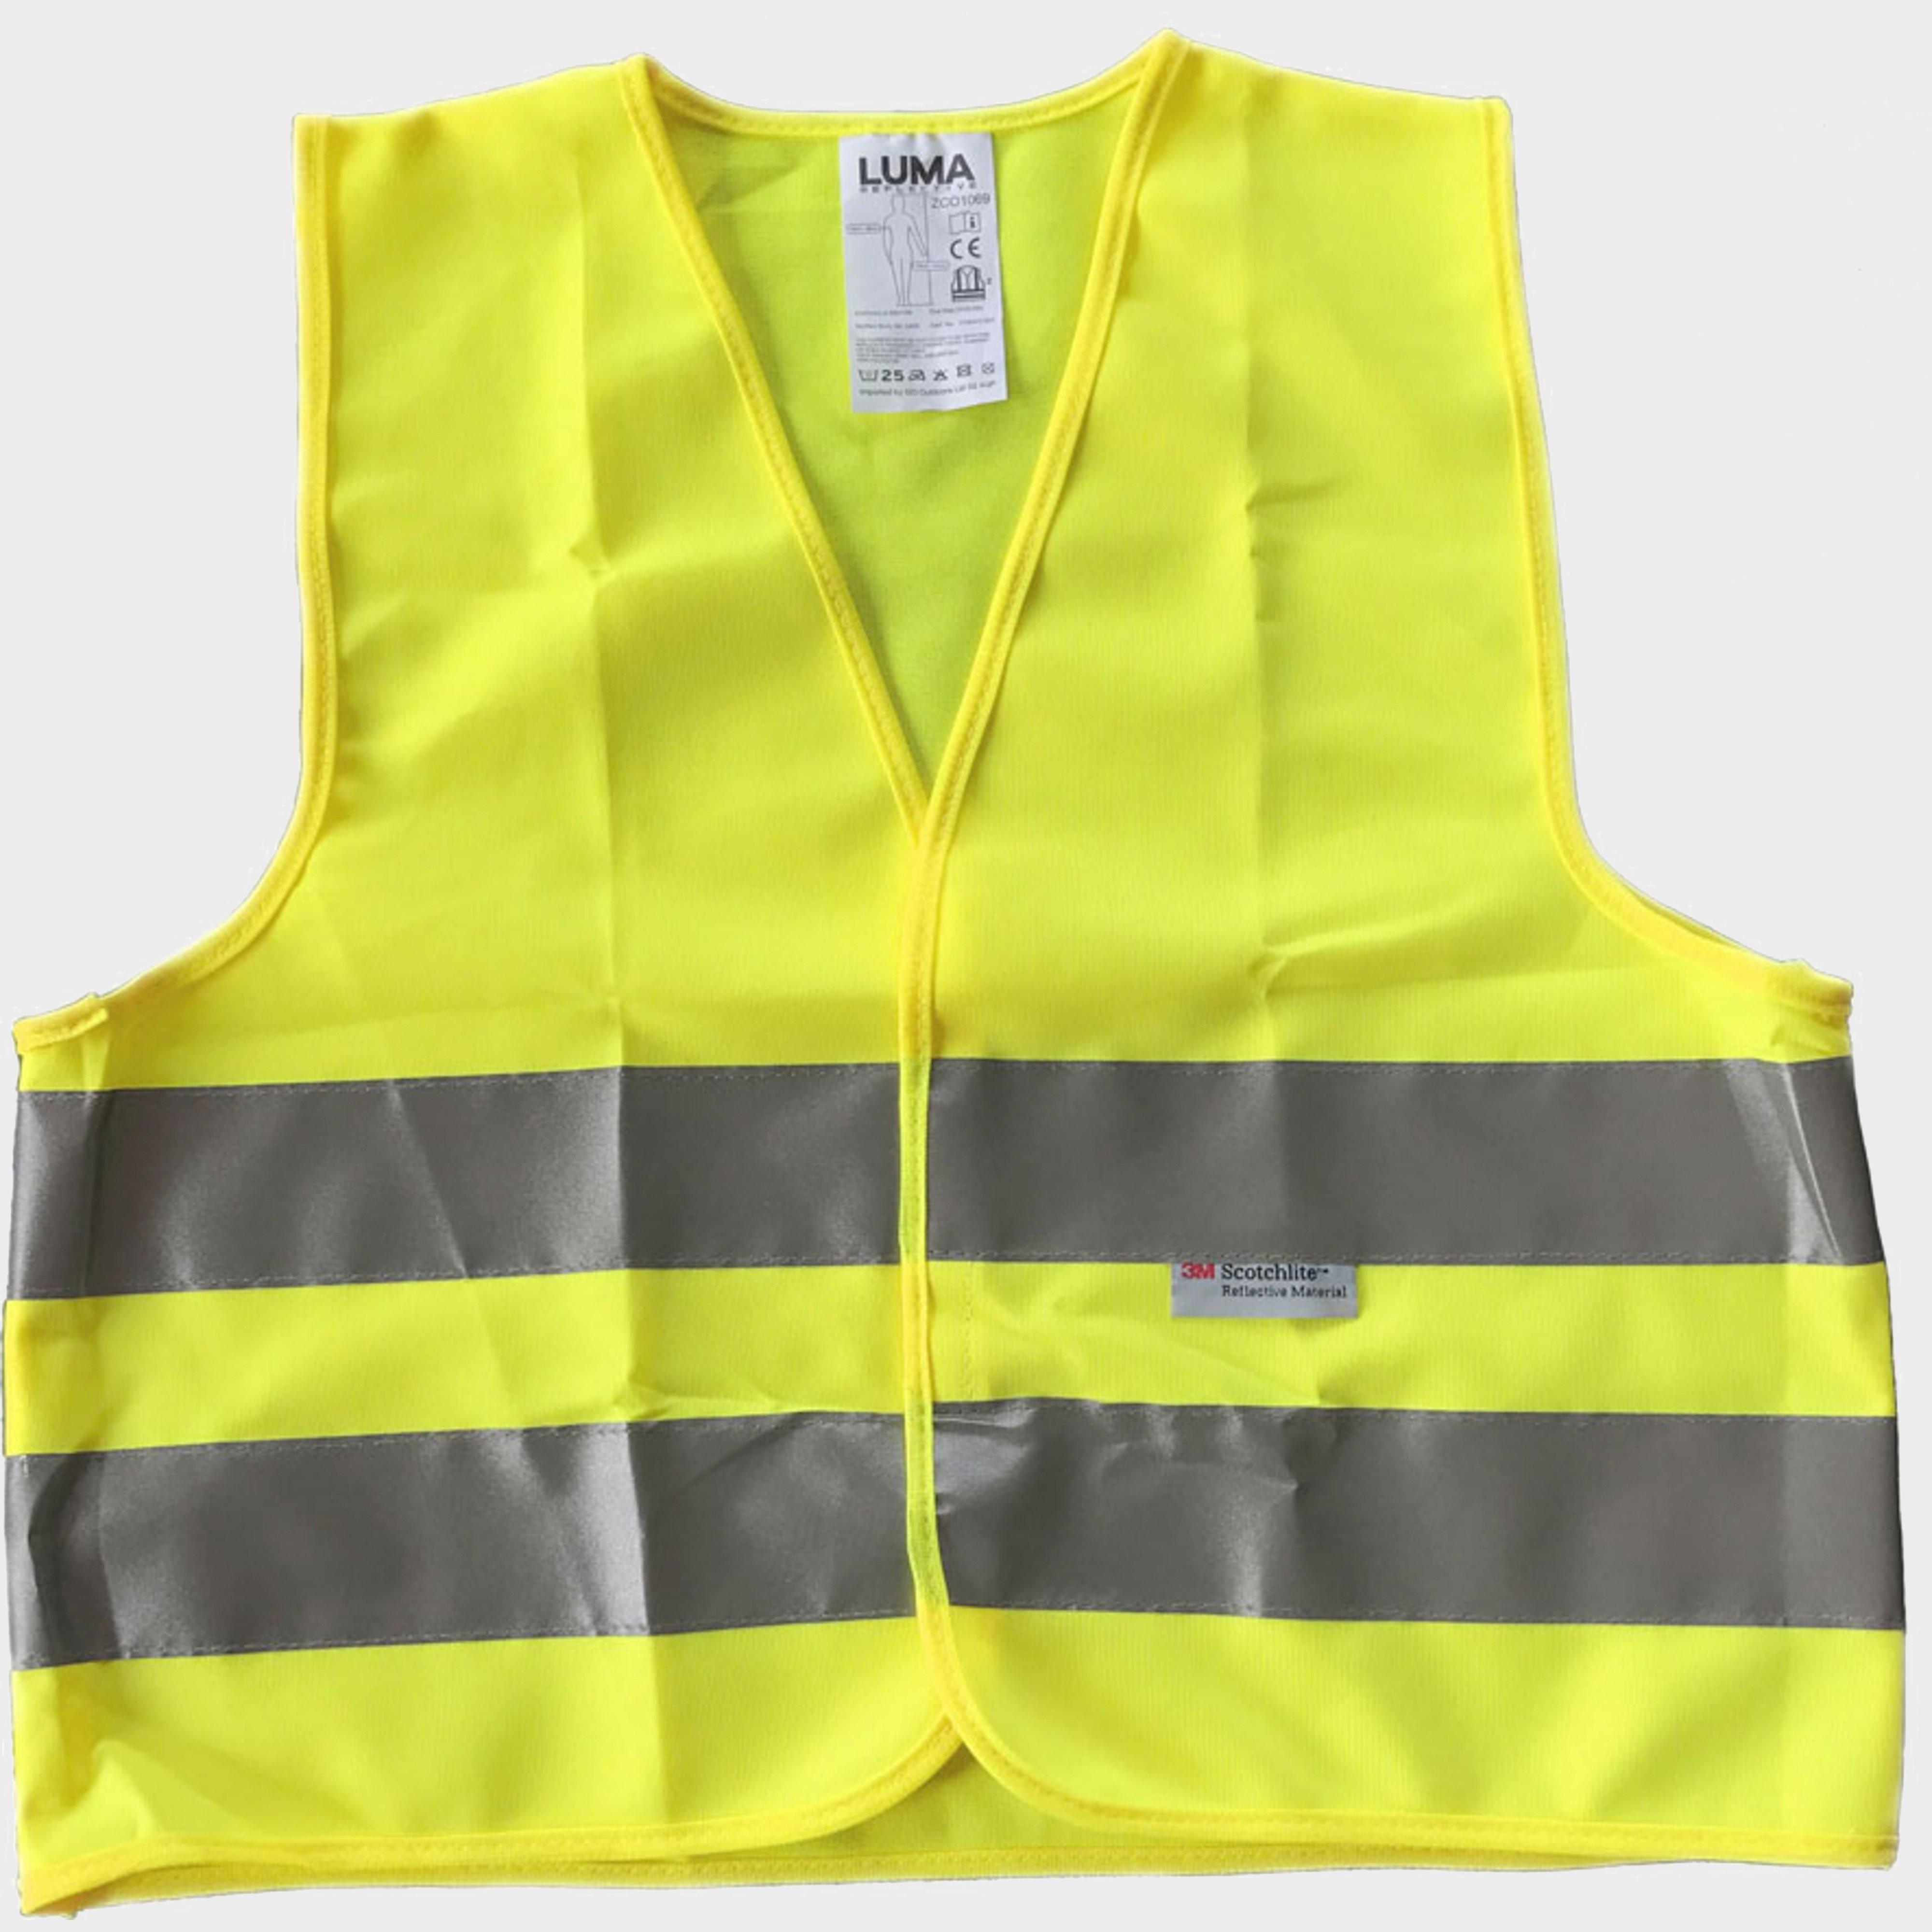 Luma Adult Safety Vest - Yellow/3m  Yellow/3m